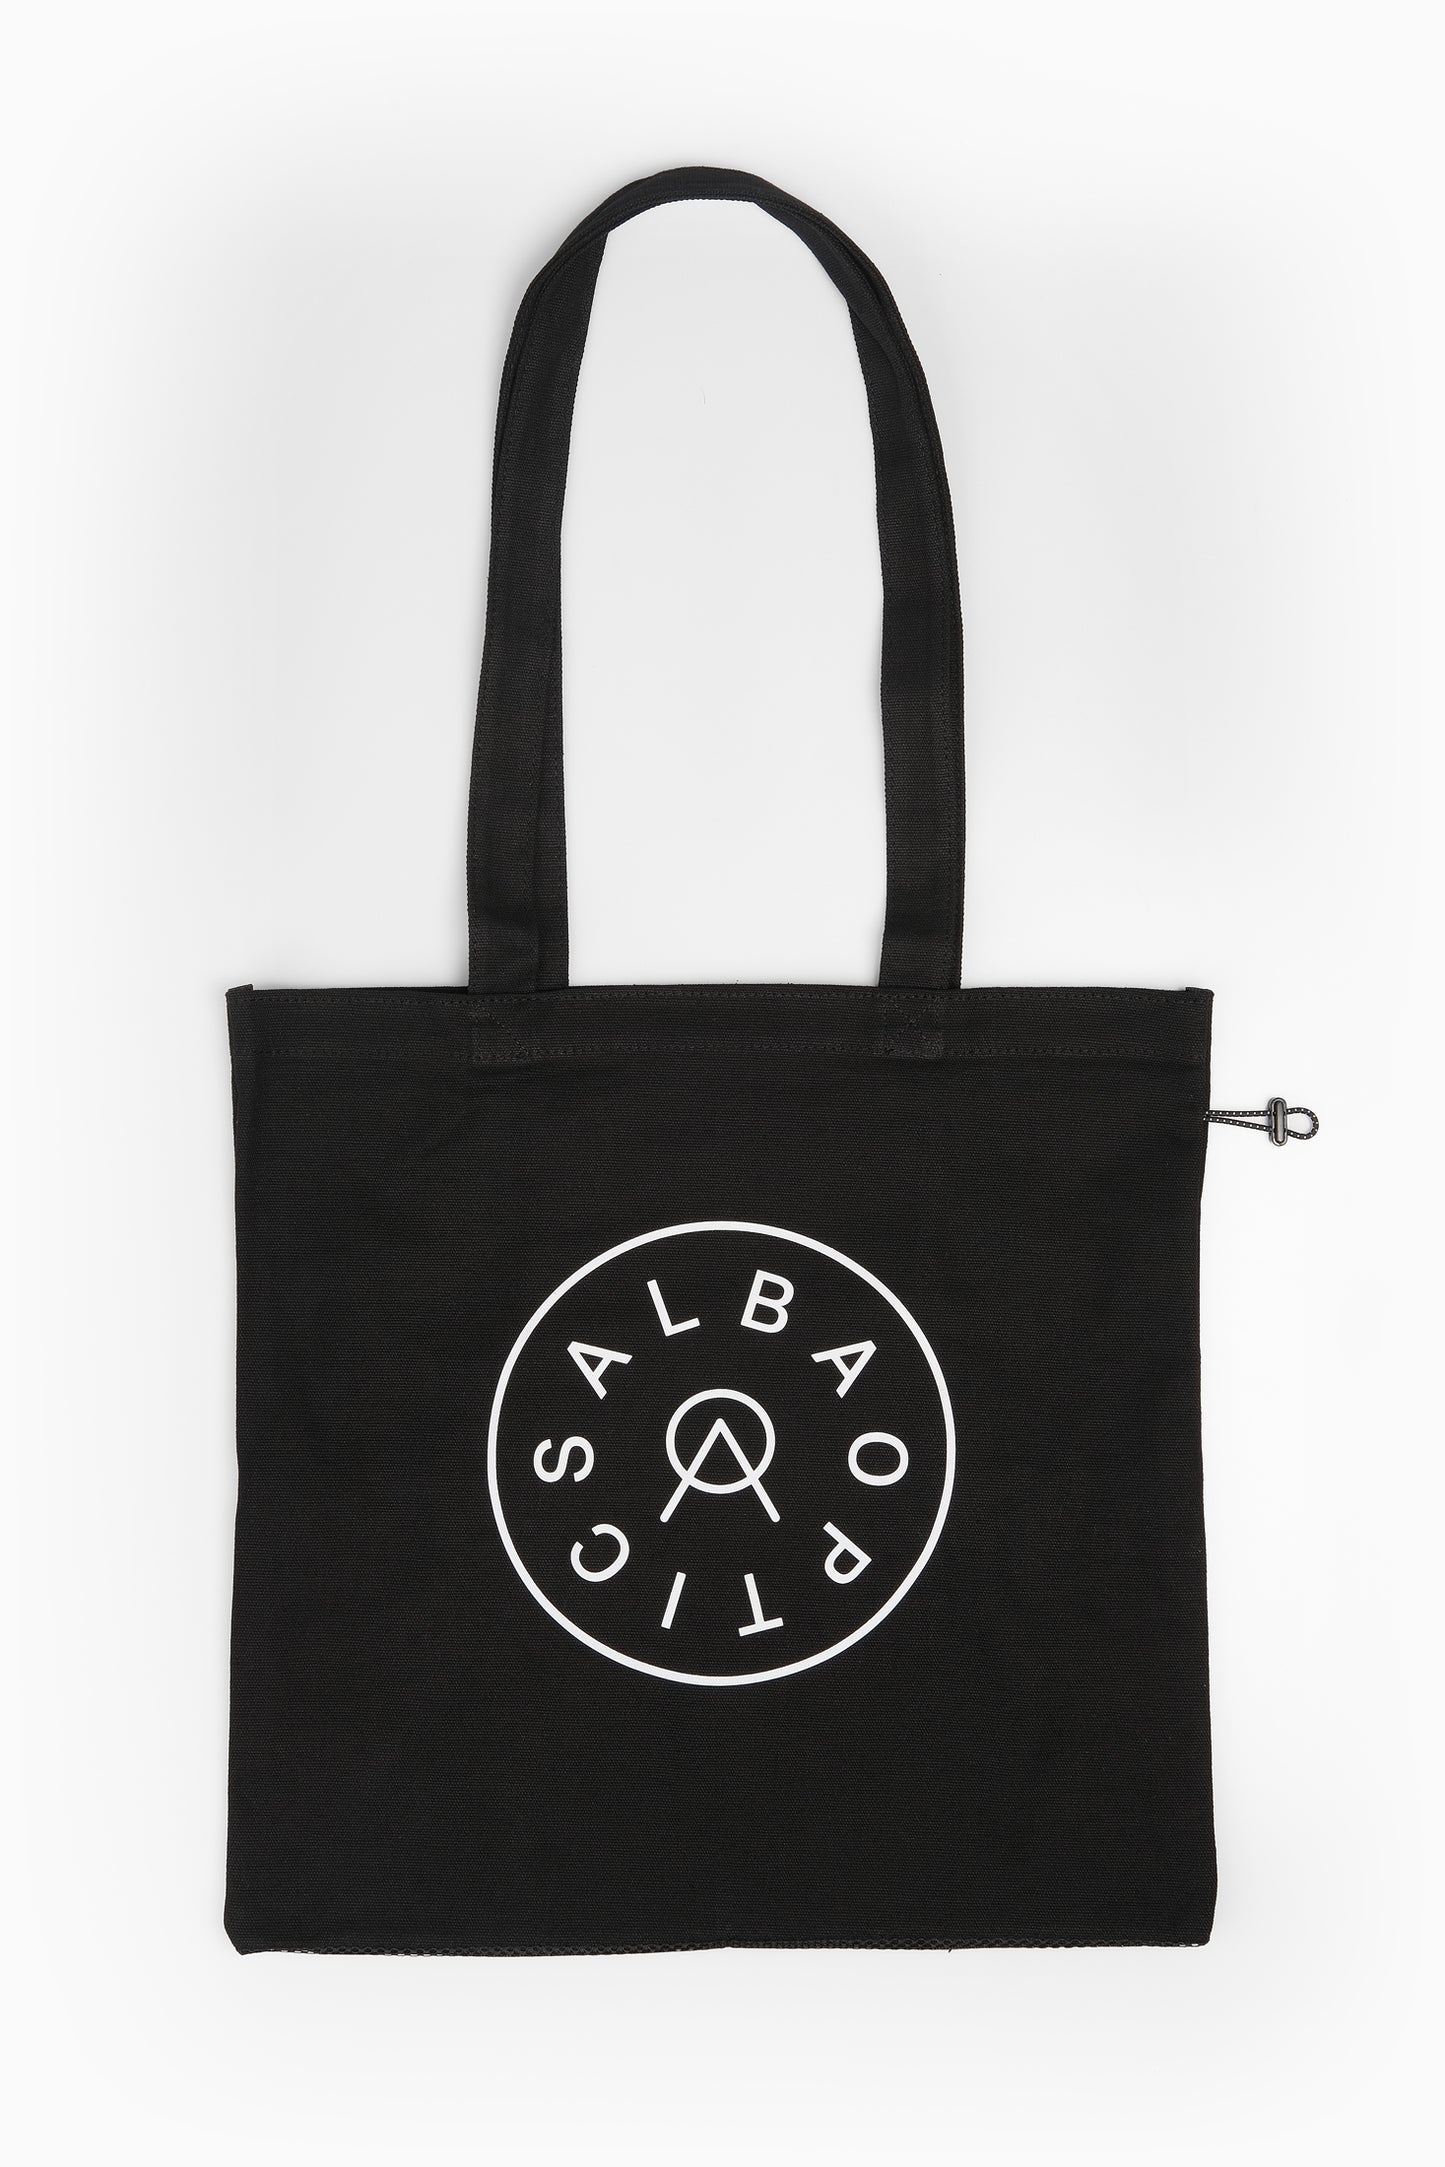 Alba Optics - Bag Tote Safe